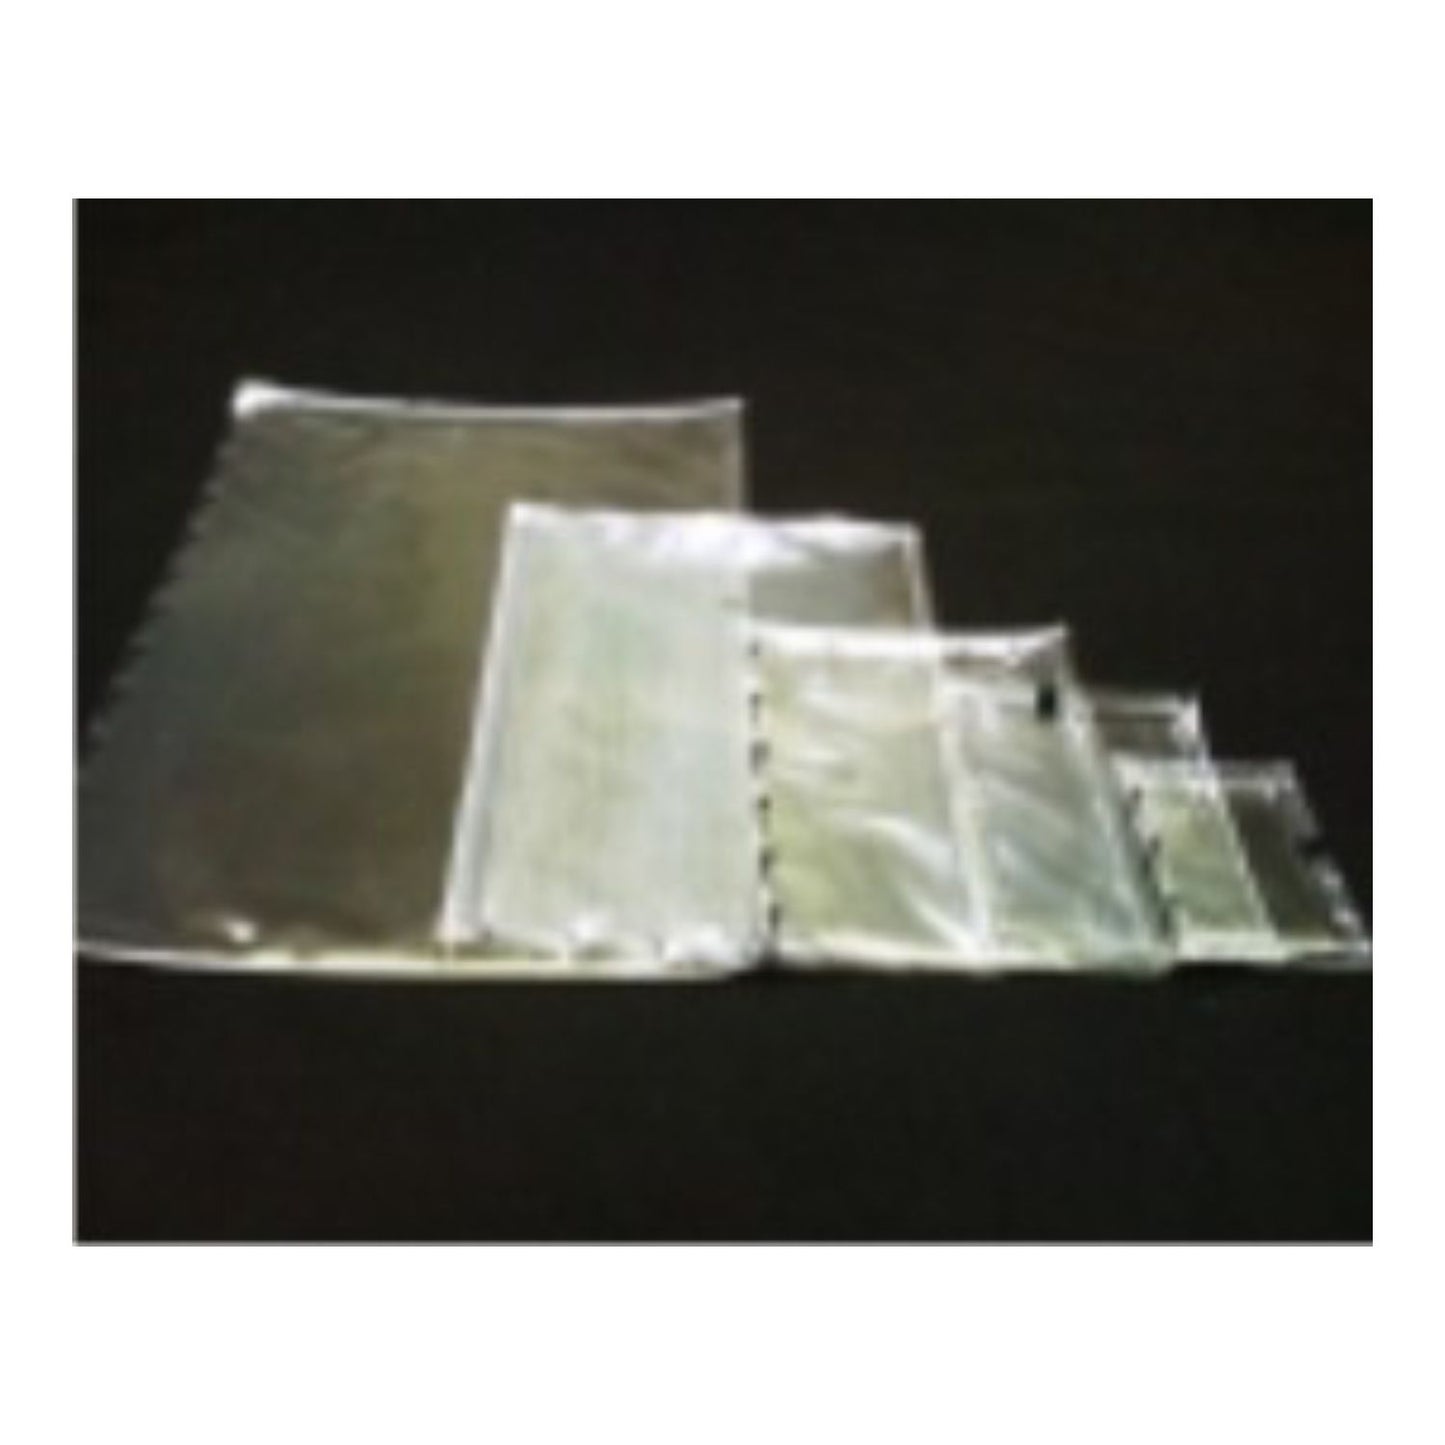 ImagePac Pouch Polymer - Starter Assortment - Rubber Stamp Materials